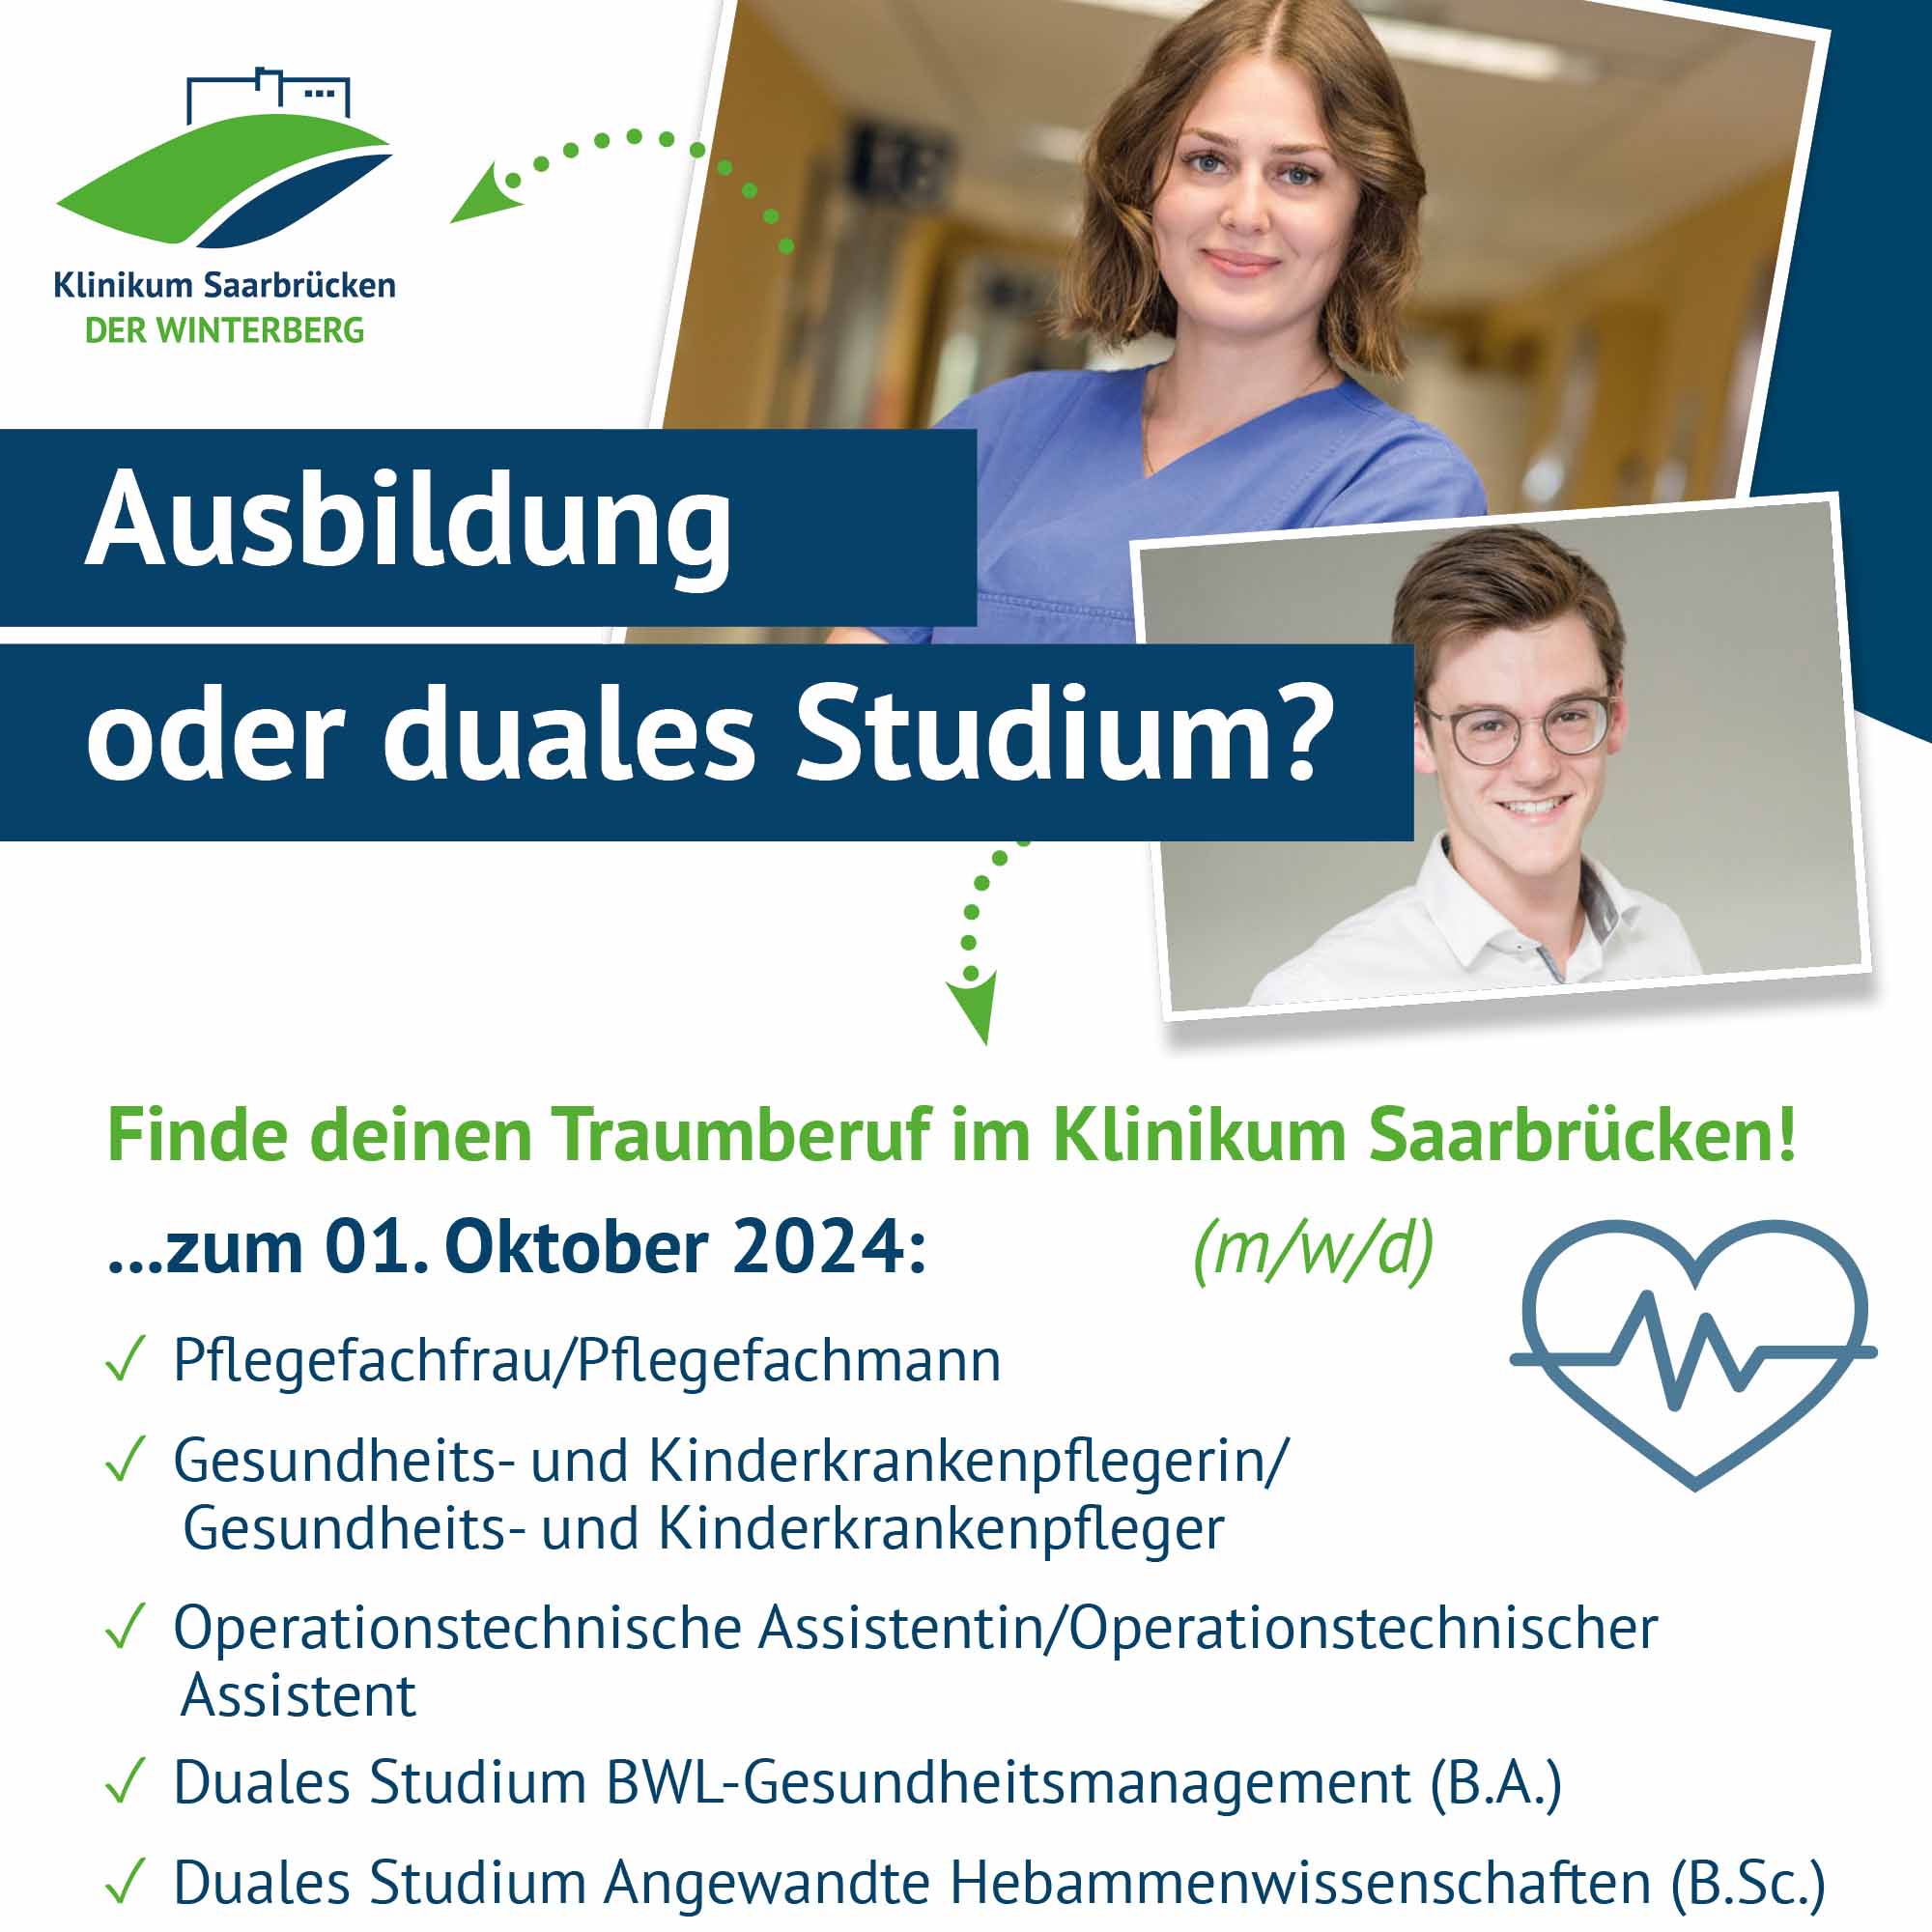 Übersicht über die Ausbildungsberufe im Oktober 2024 im Klinikum Saarbrücken auf dem Winterberg